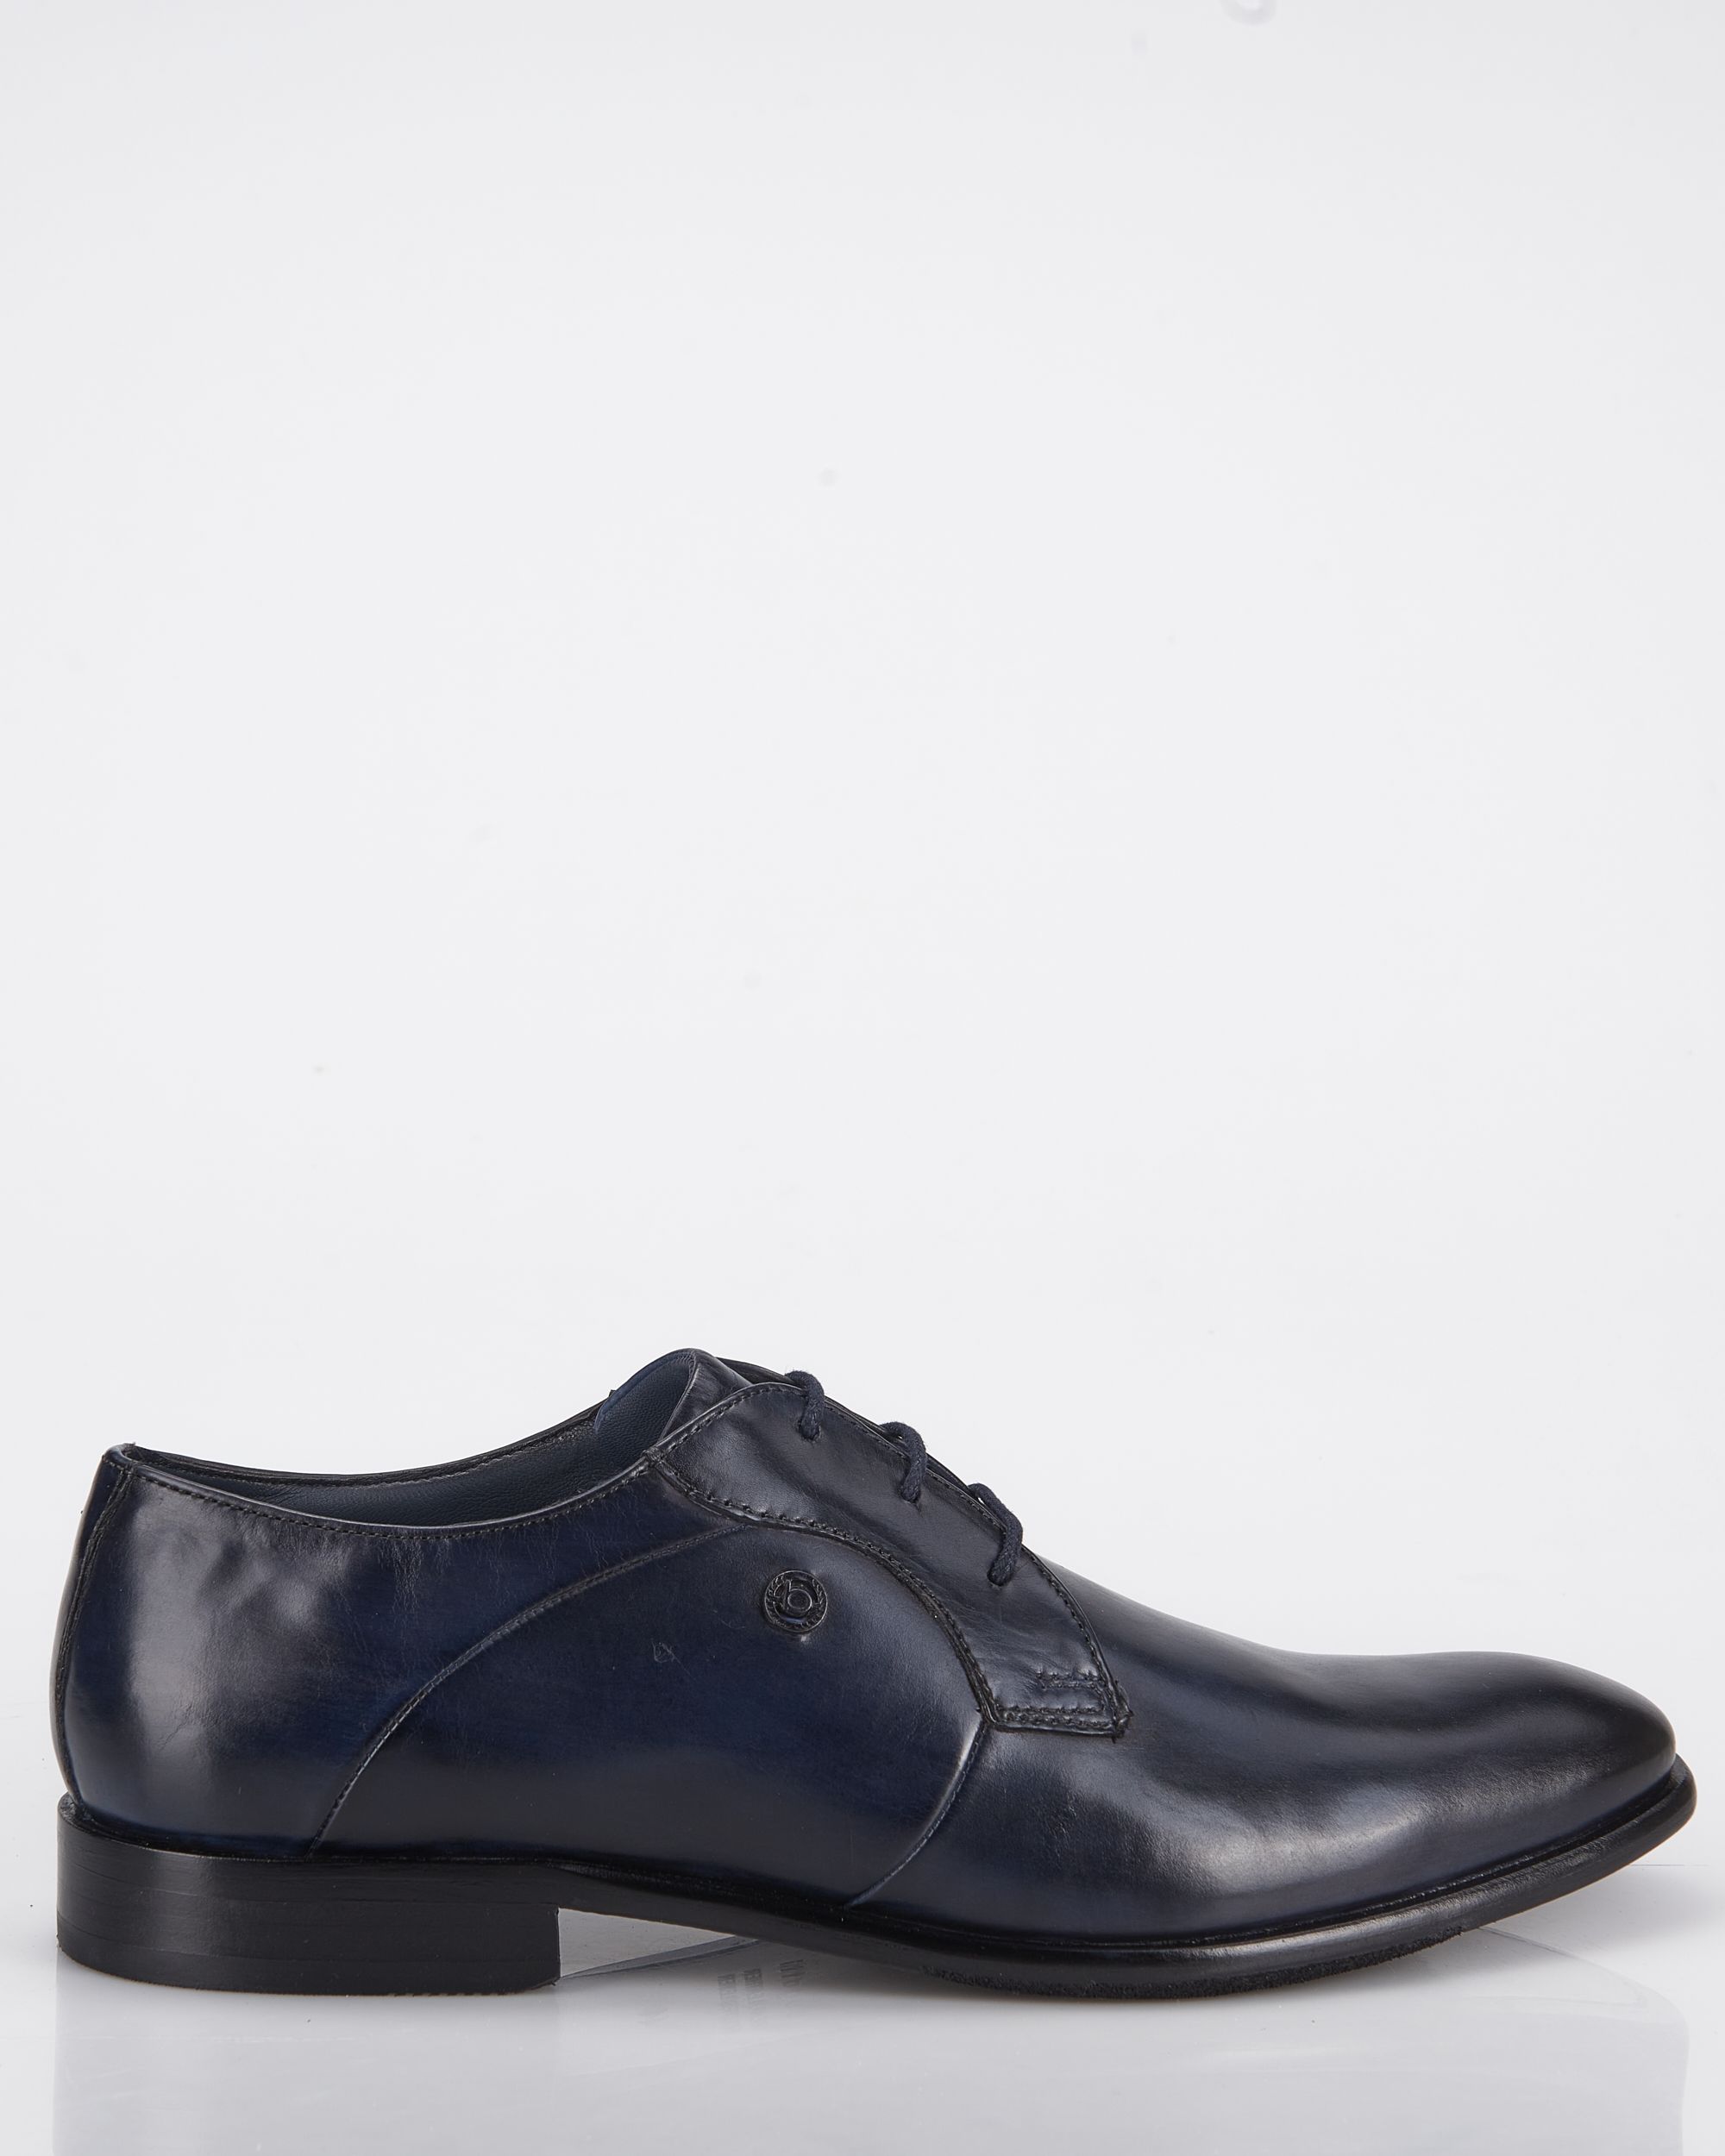 Bugatti Geklede schoenen Donker blauw 083885-001-41